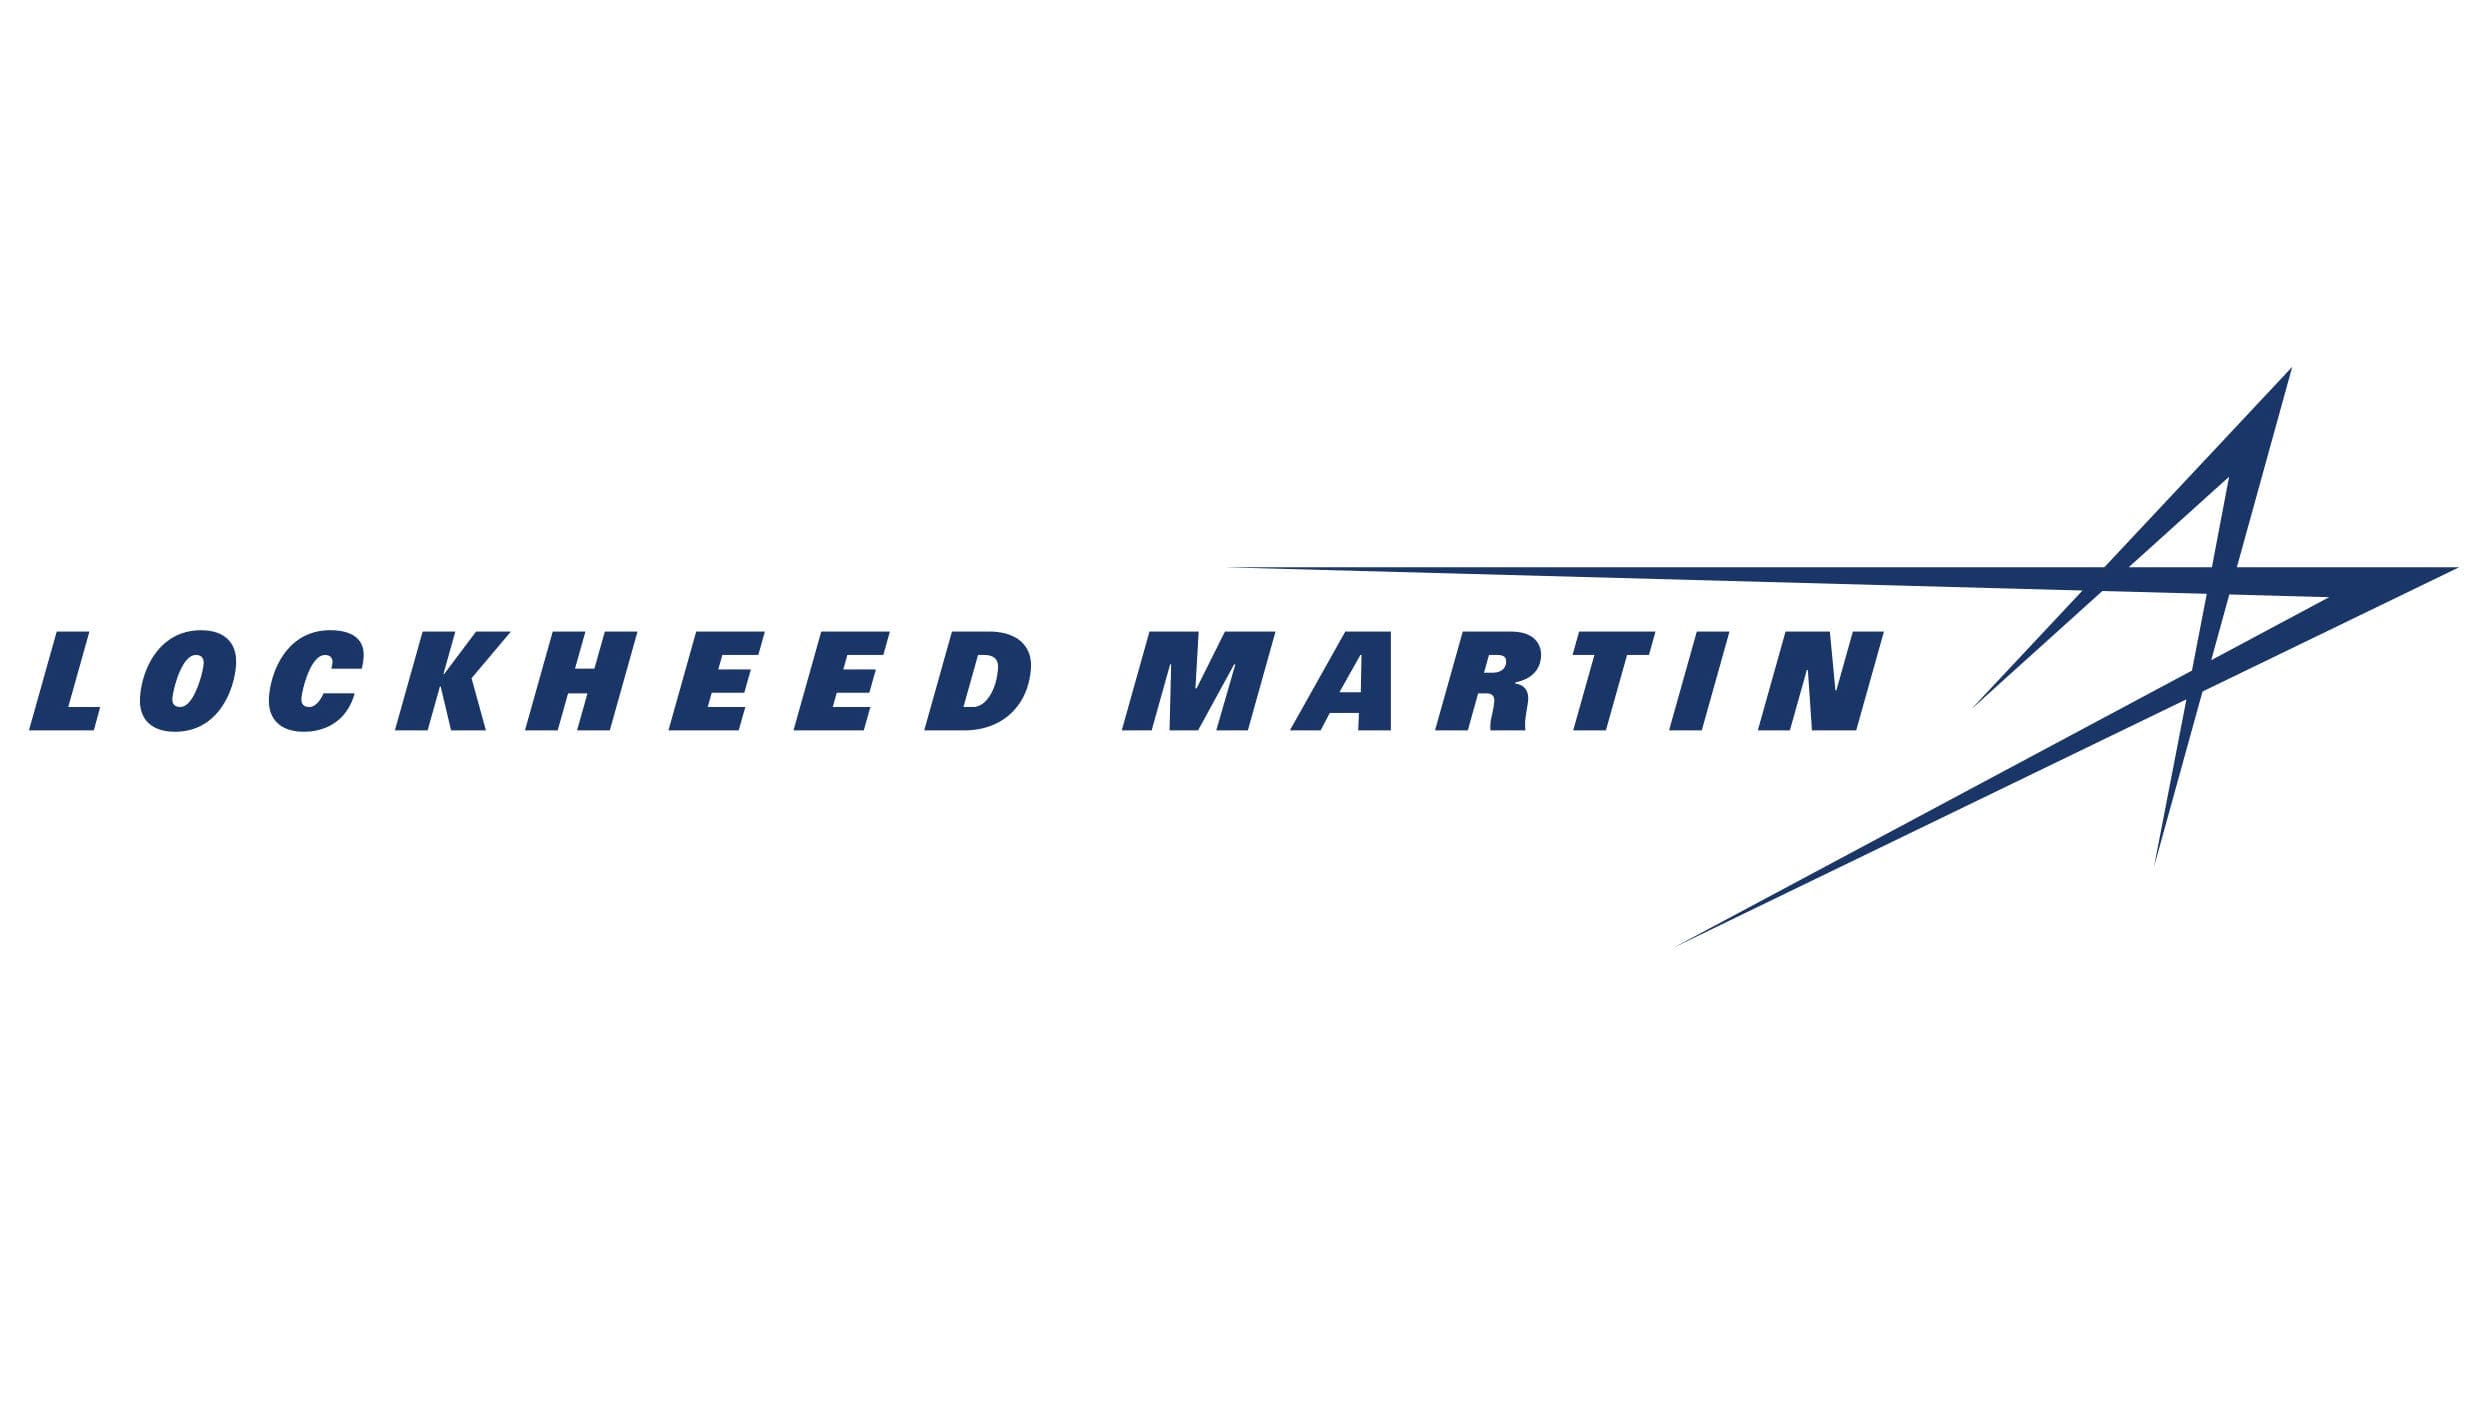 Lockheed Martin logo - Home